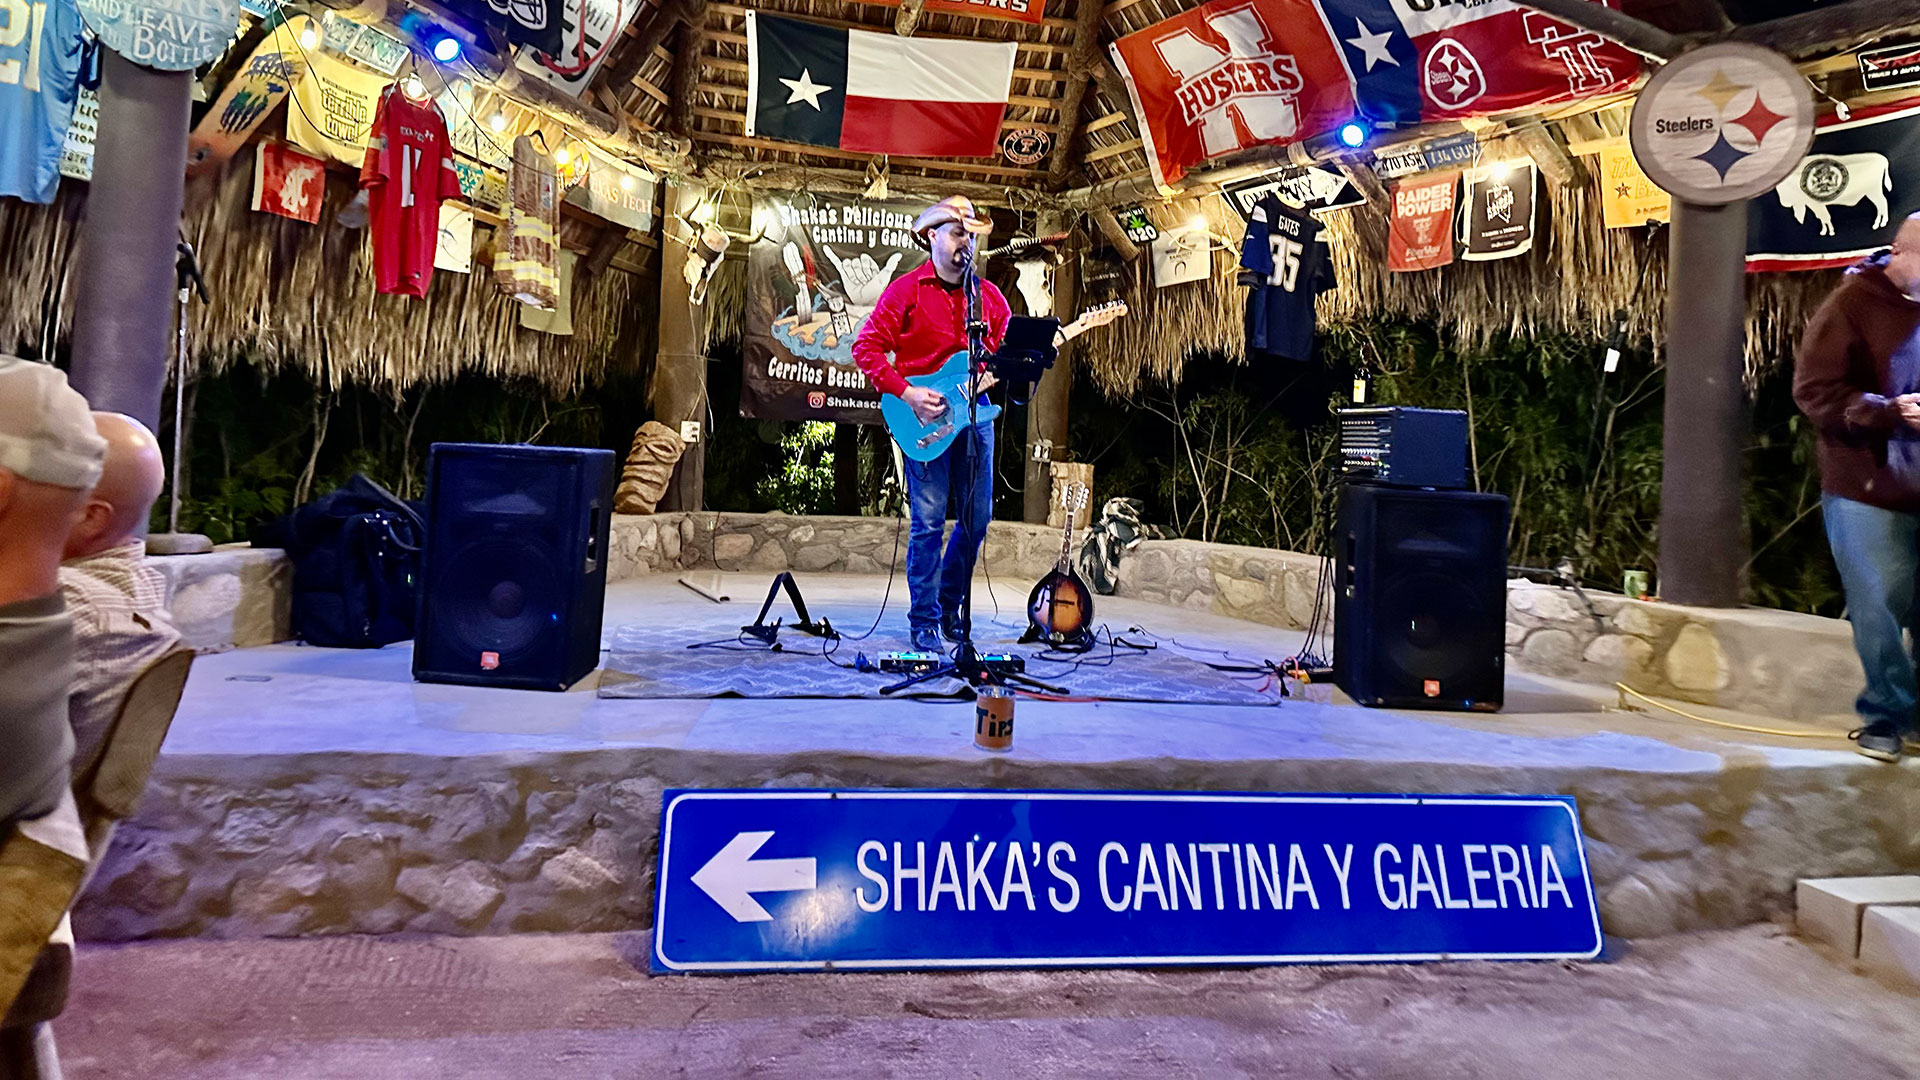 Shooter Ford at Shaka’s Cantina in Cerritos